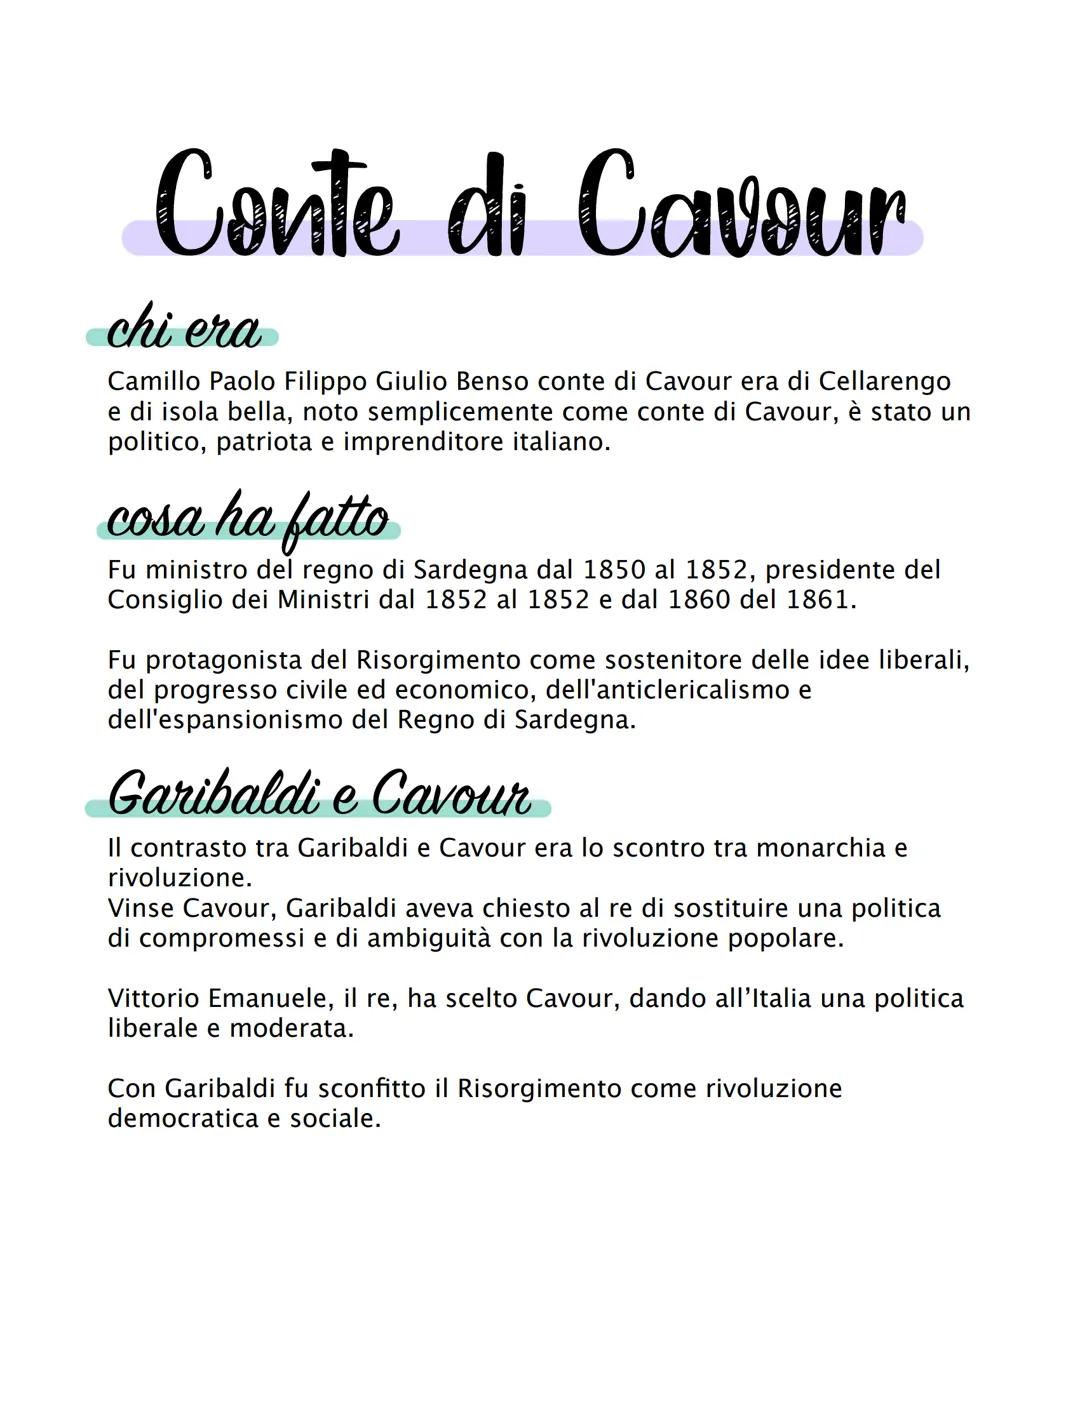 Conte di Cavour
chi era
Camillo Paolo Filippo Giulio Benso conte di Cavour era di Cellarengo
e di isola bella, noto semplicemente come conte